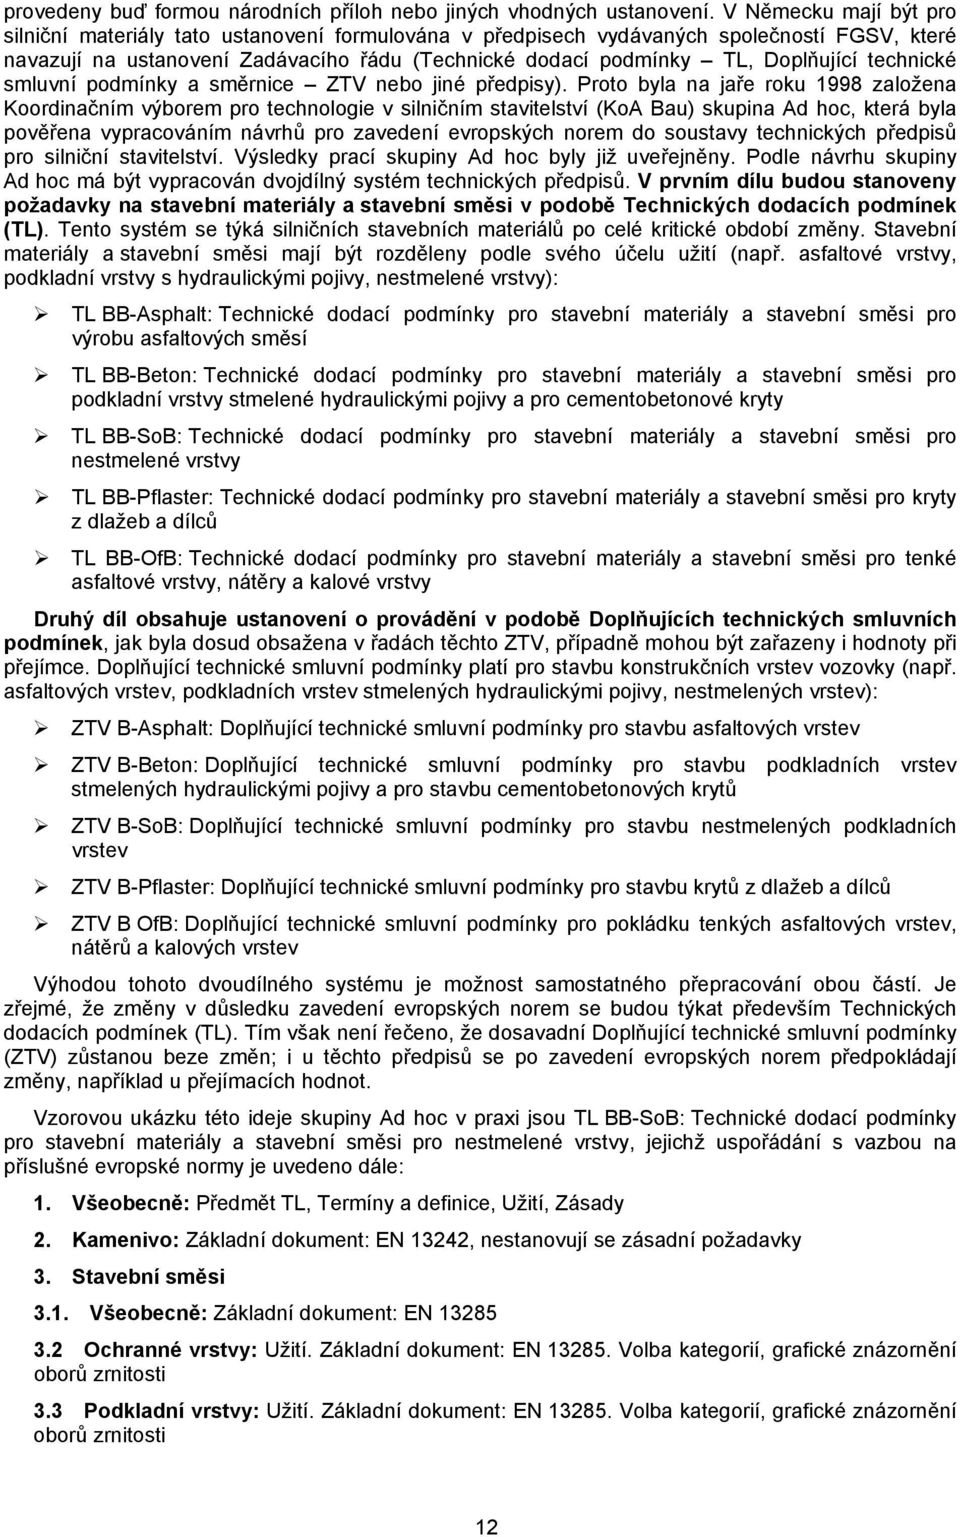 technické smluvní podmínky a směrnice ZTV nebo jiné předpisy).